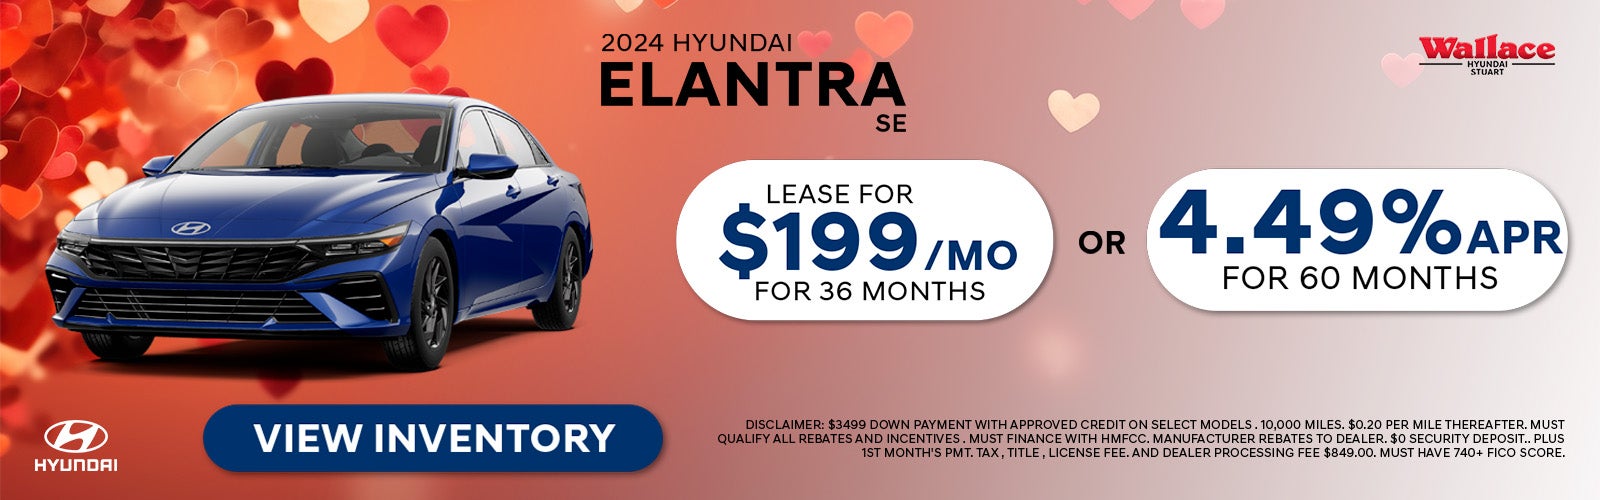 Hyundai Elantra Special Offer